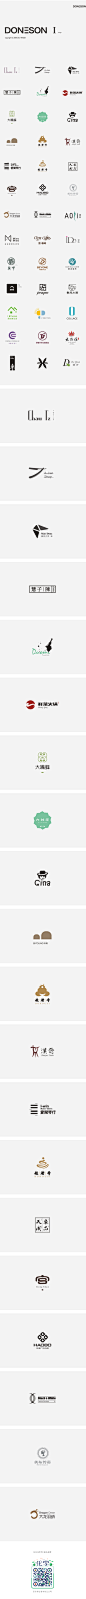 东尚/商业logo集锦 I-字体传奇网-中国首个字体品牌设计师交流网